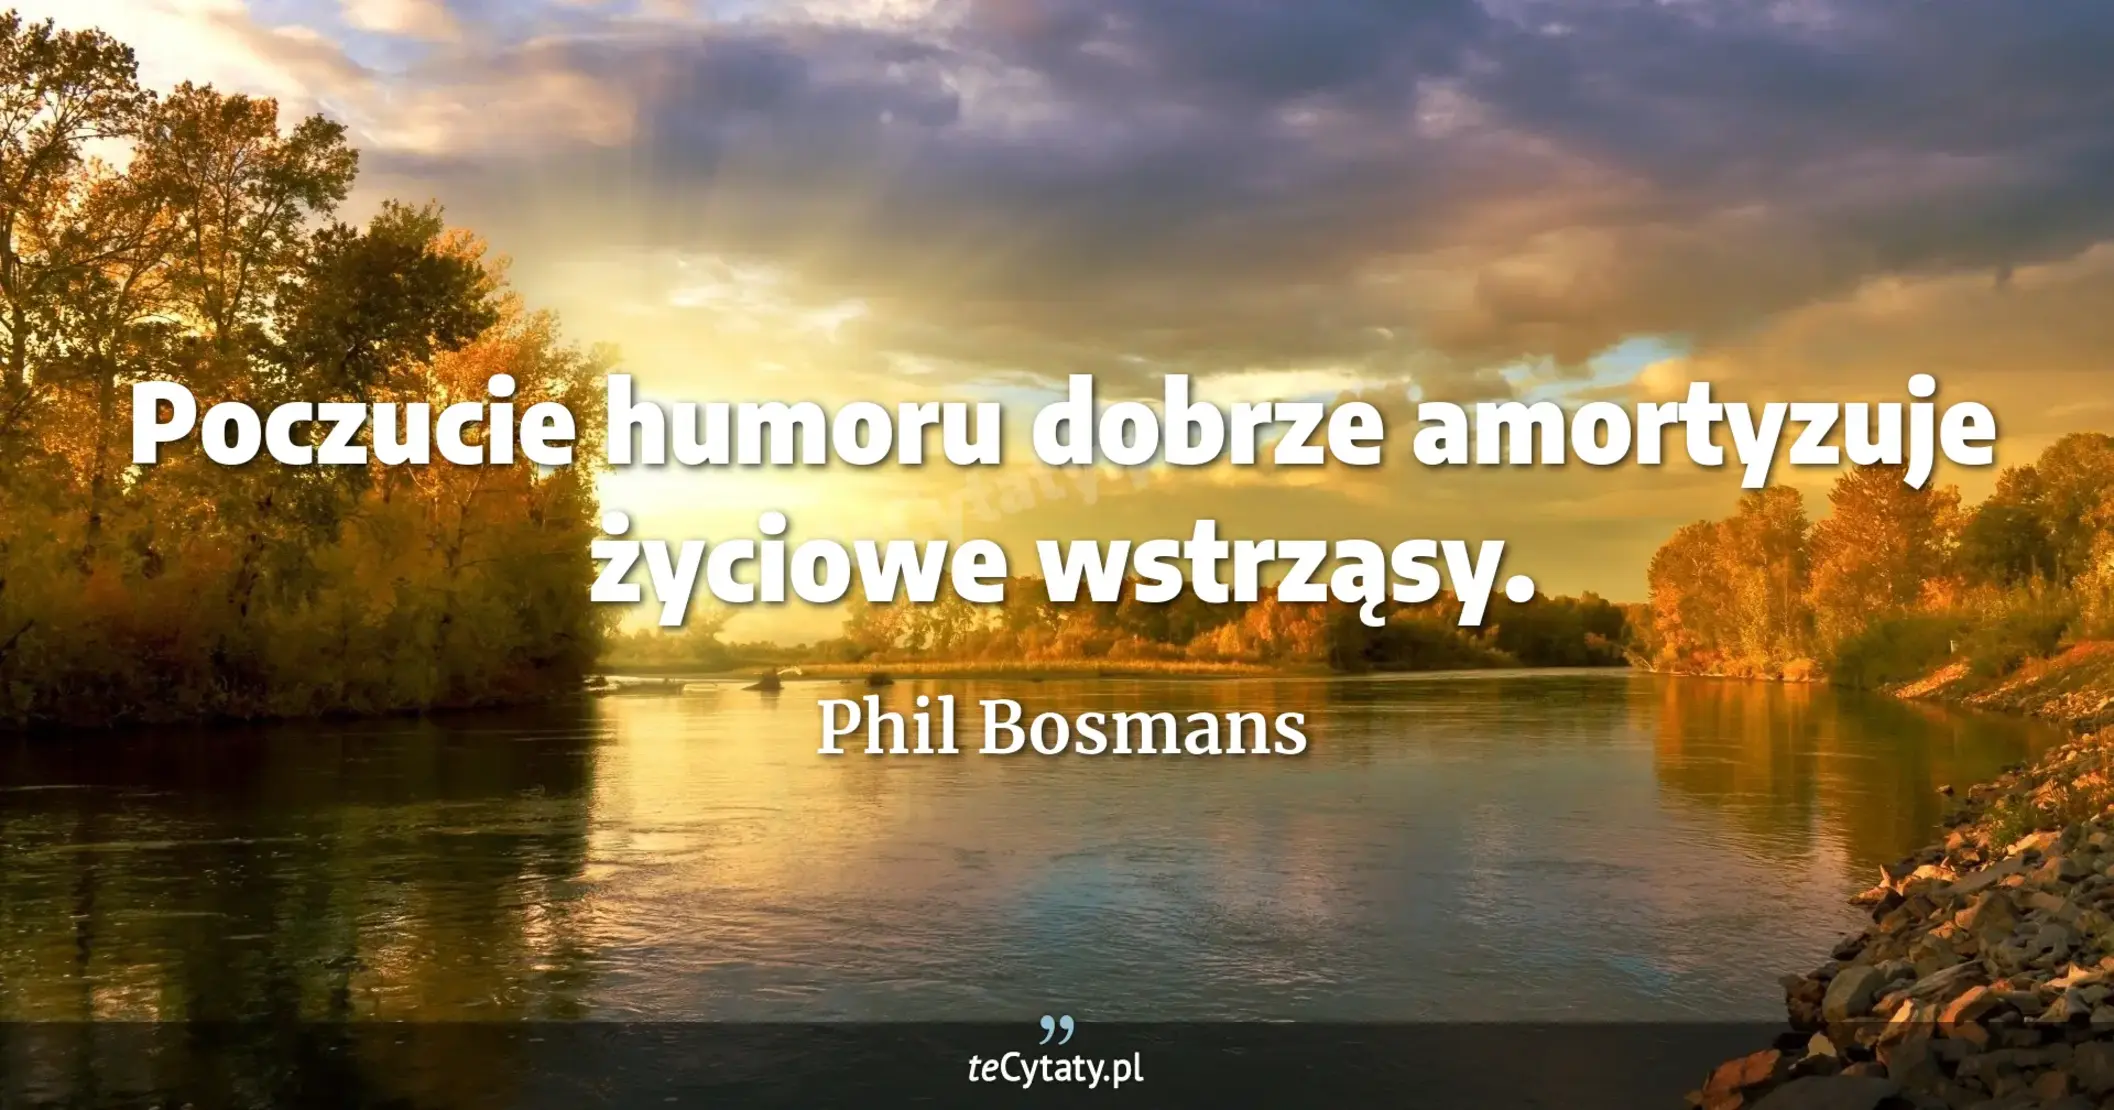 Poczucie humoru dobrze amortyzuje życiowe wstrząsy. - Phil Bosmans